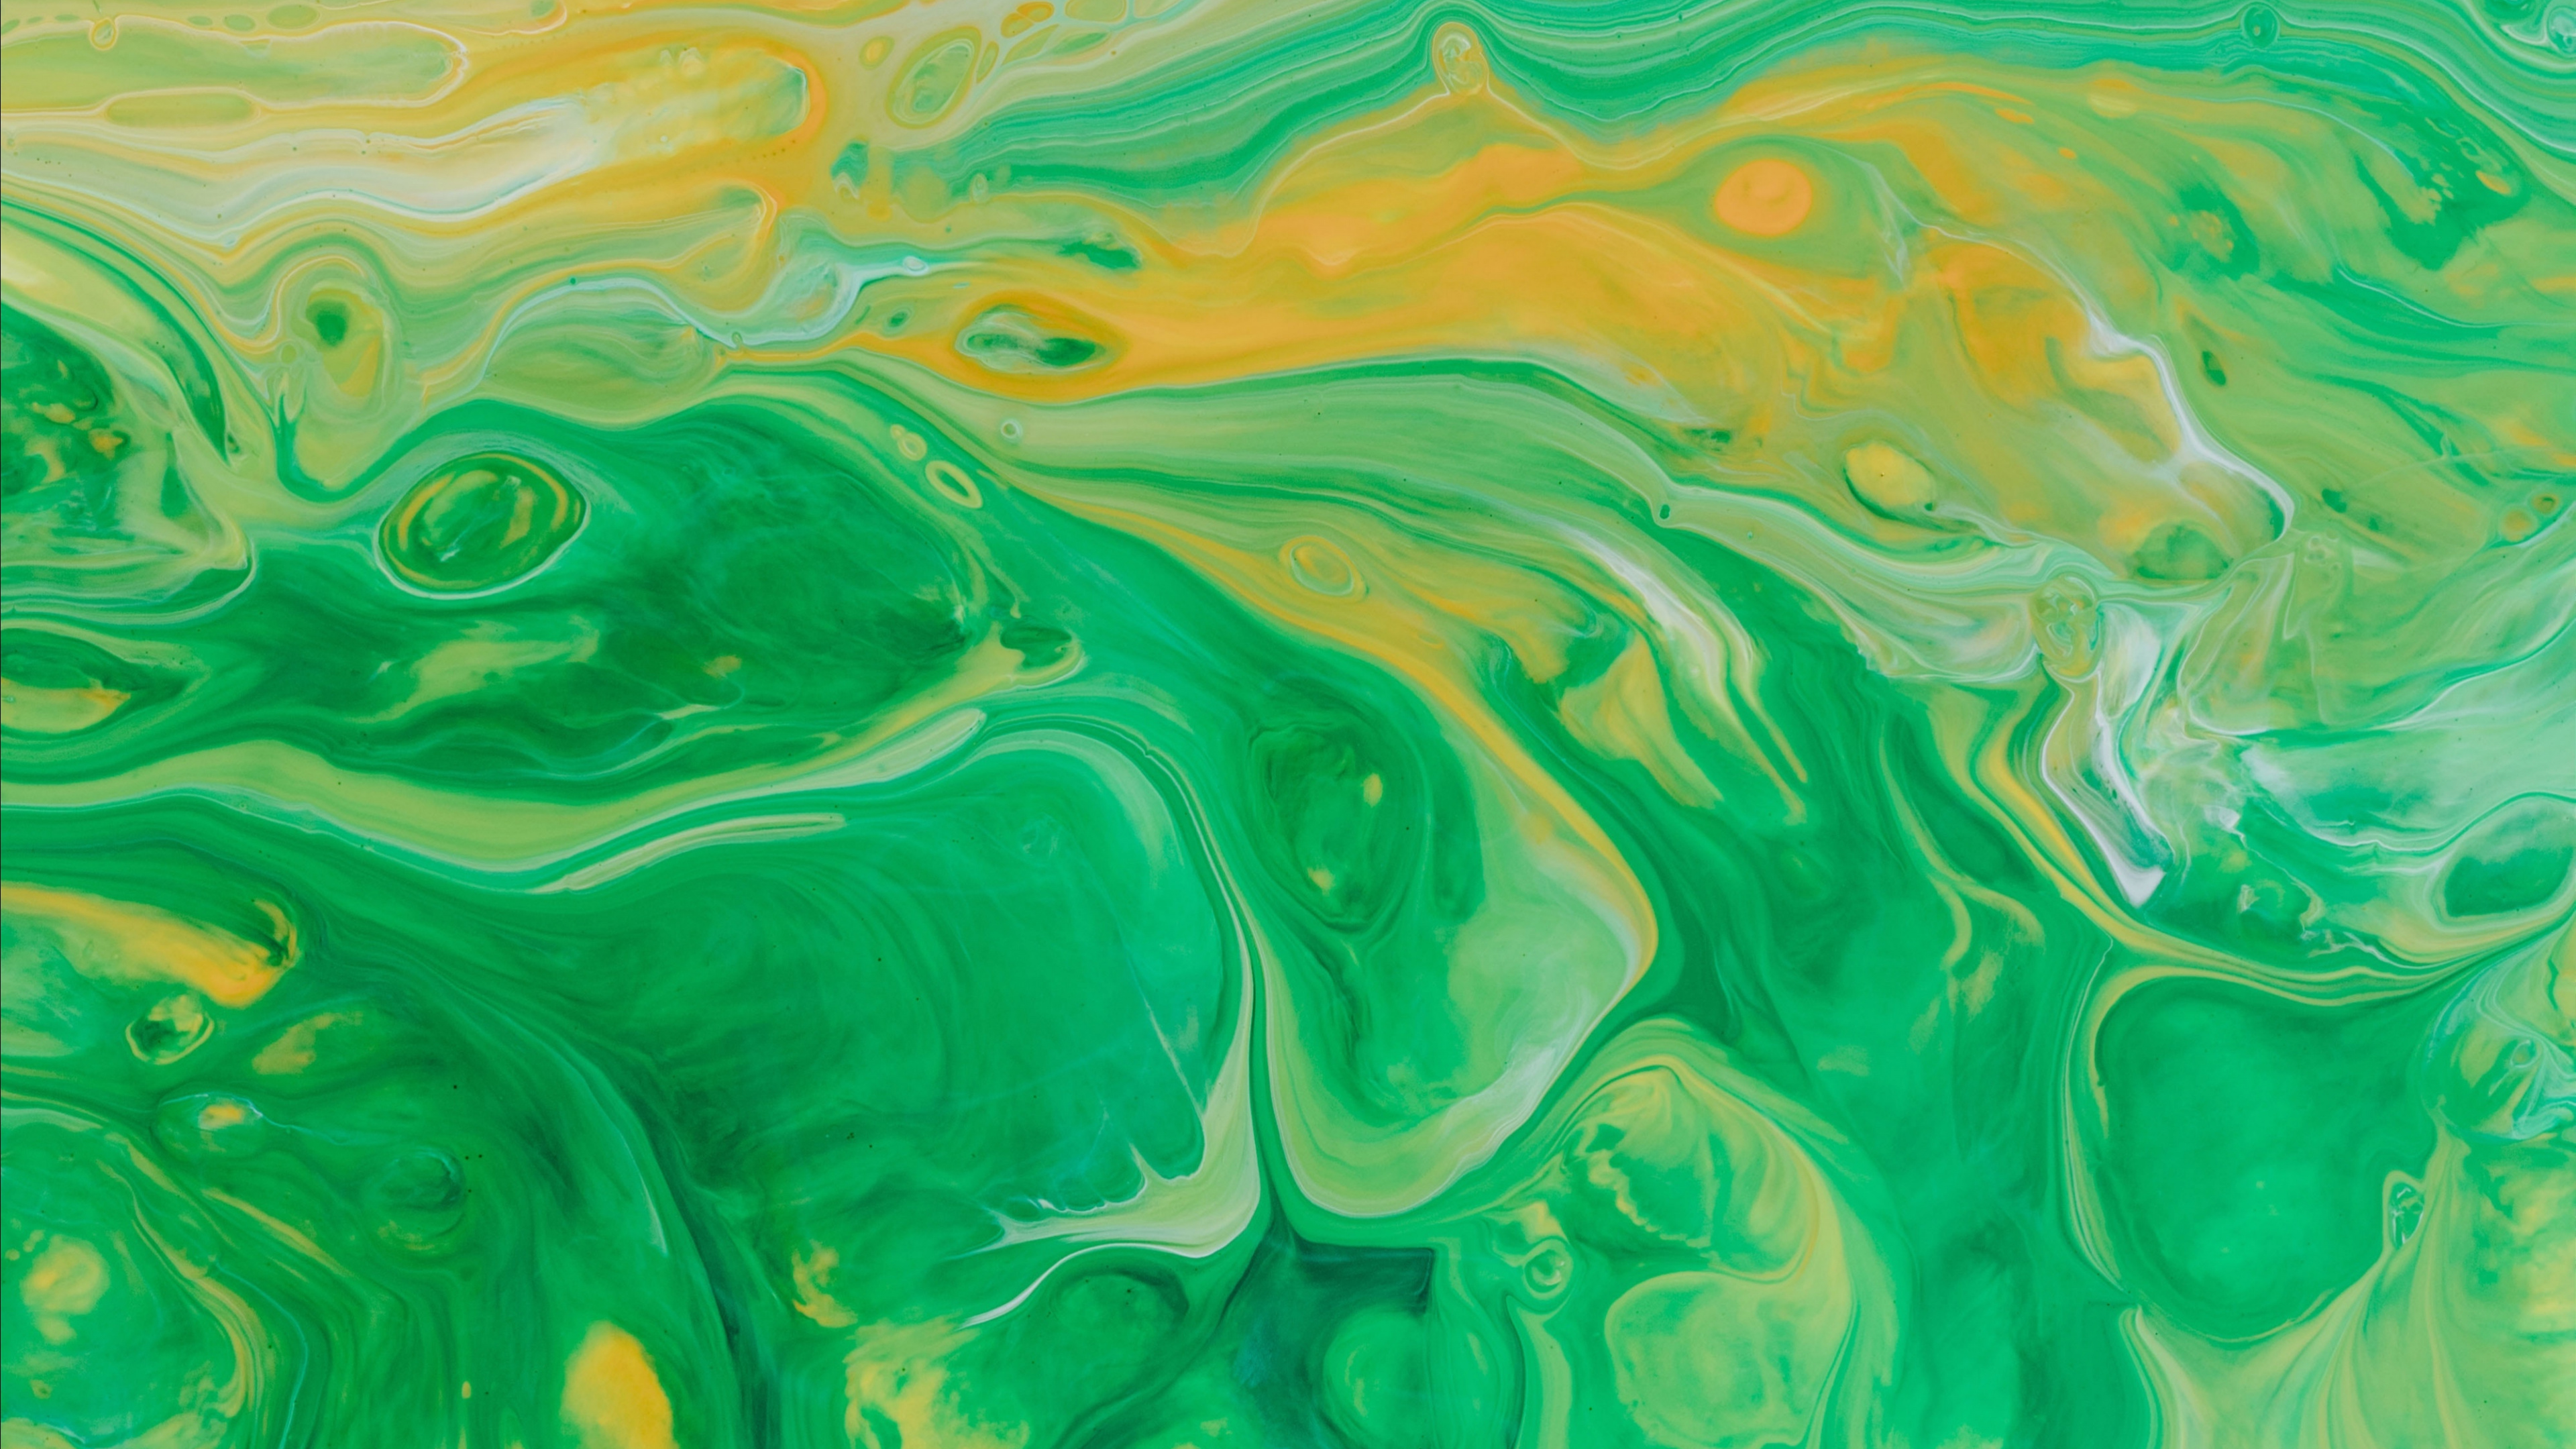 Pintura Abstracta Verde y Amarilla. Wallpaper in 3840x2160 Resolution